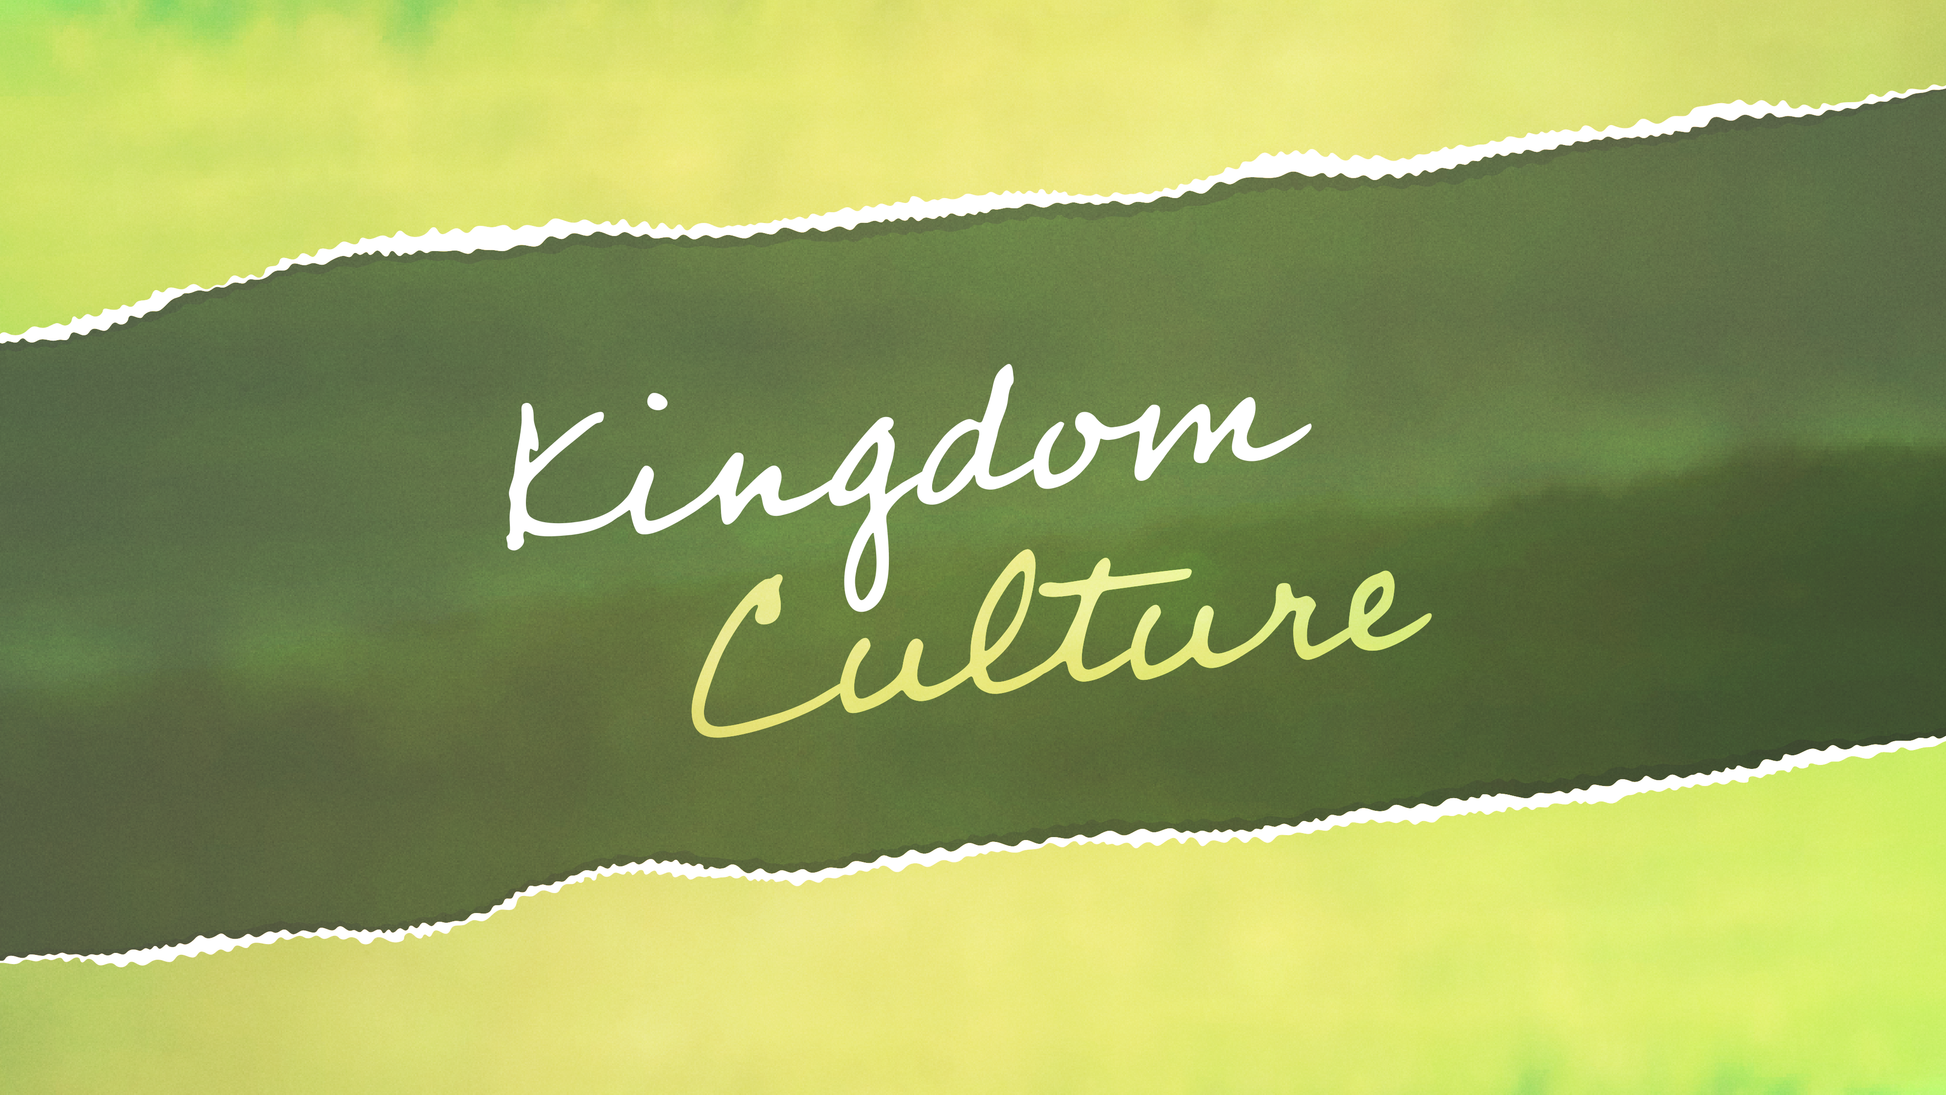 Sermon Graphic on Kingdom Culture